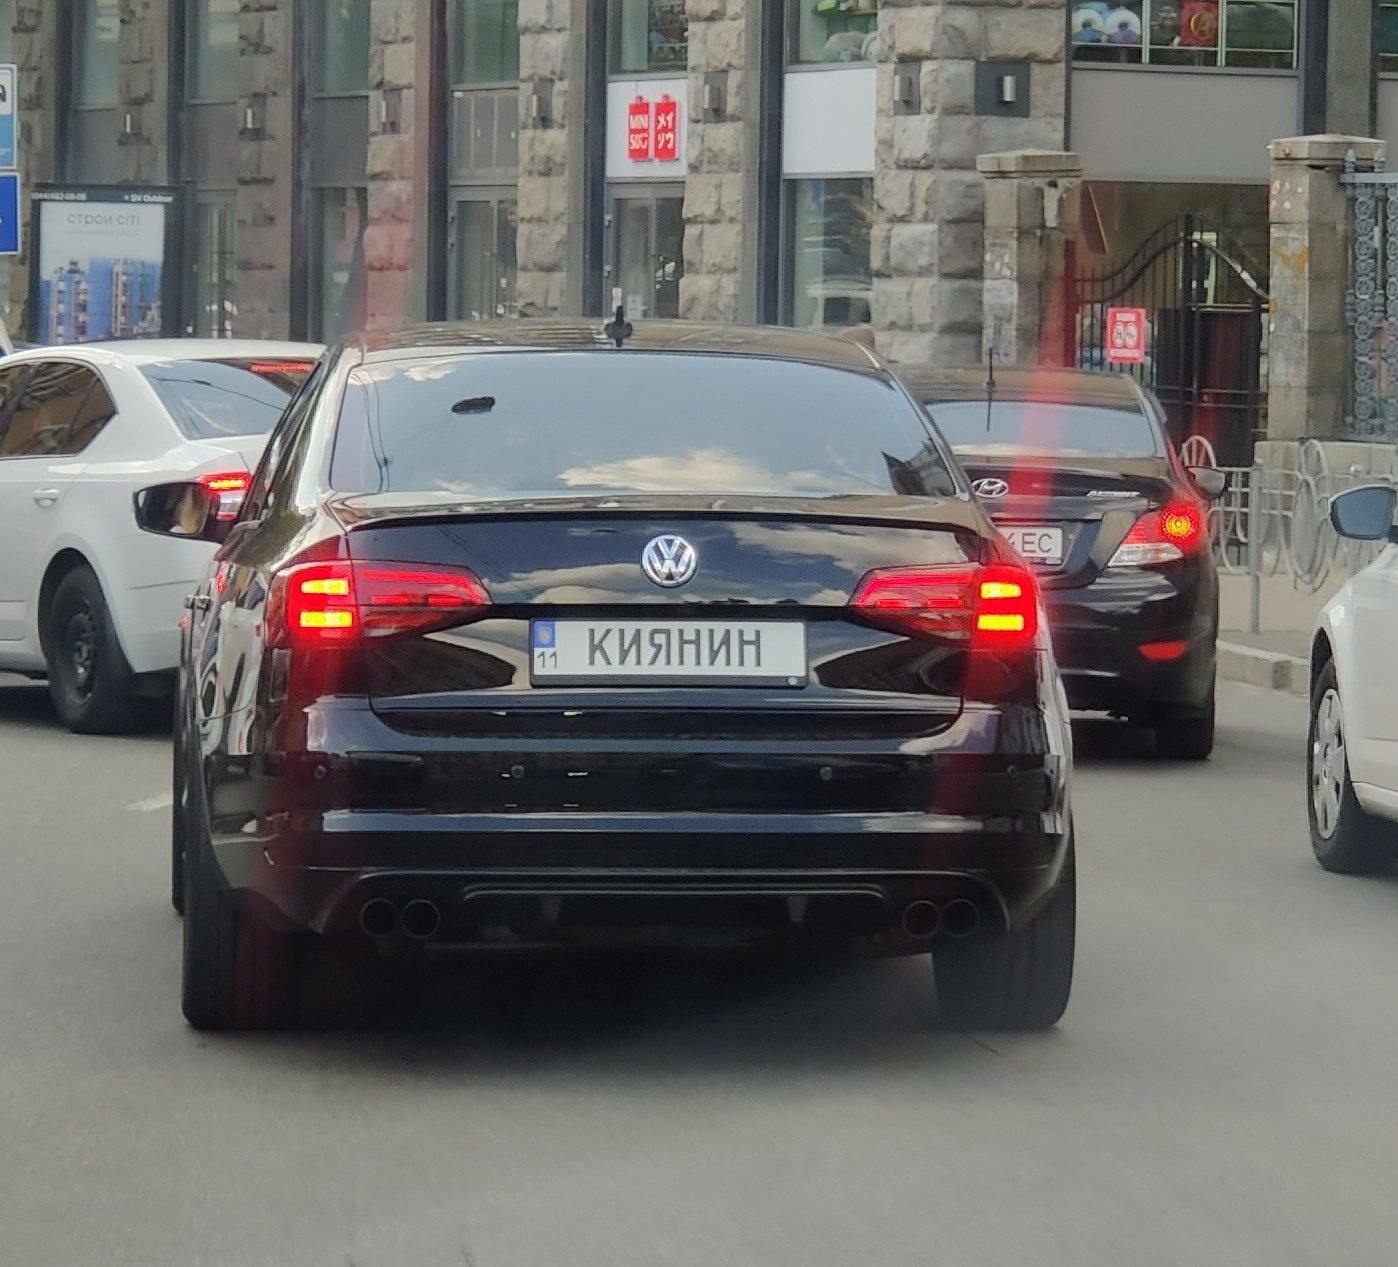 В столице заметили необычный номерной знак у Volkswagen